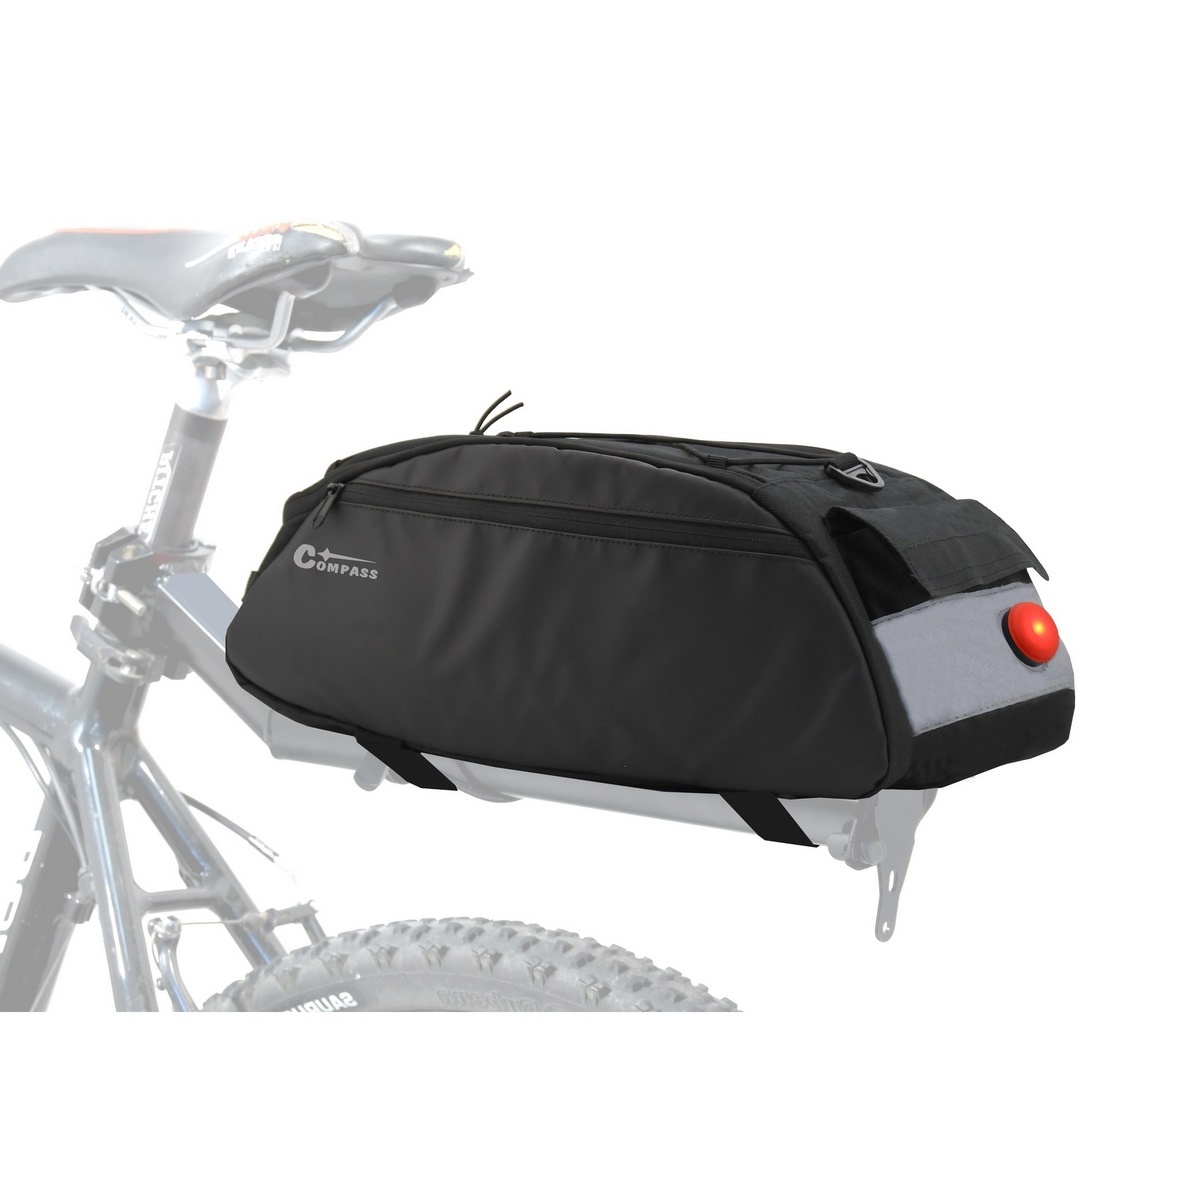 Geantă bicicletă Compass portbagaj + luminaLED din spate Compass